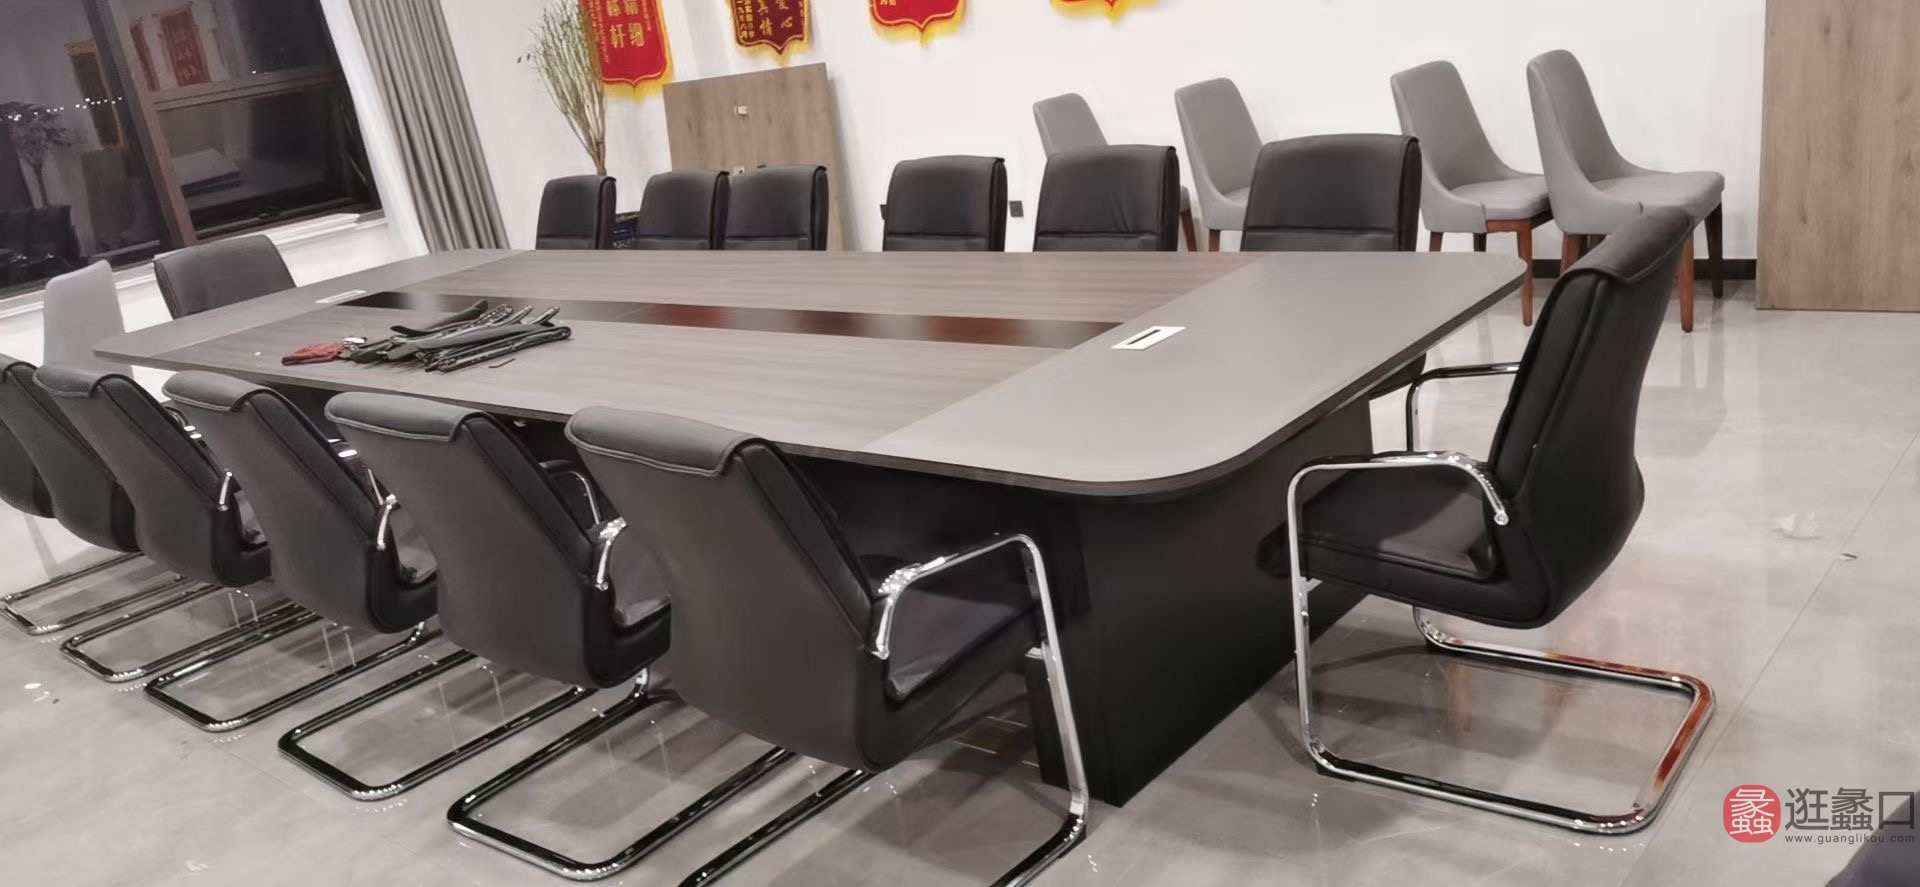 佐唯办公家具现代简约会议桌椅组合商务接待面试ZUOWEI019